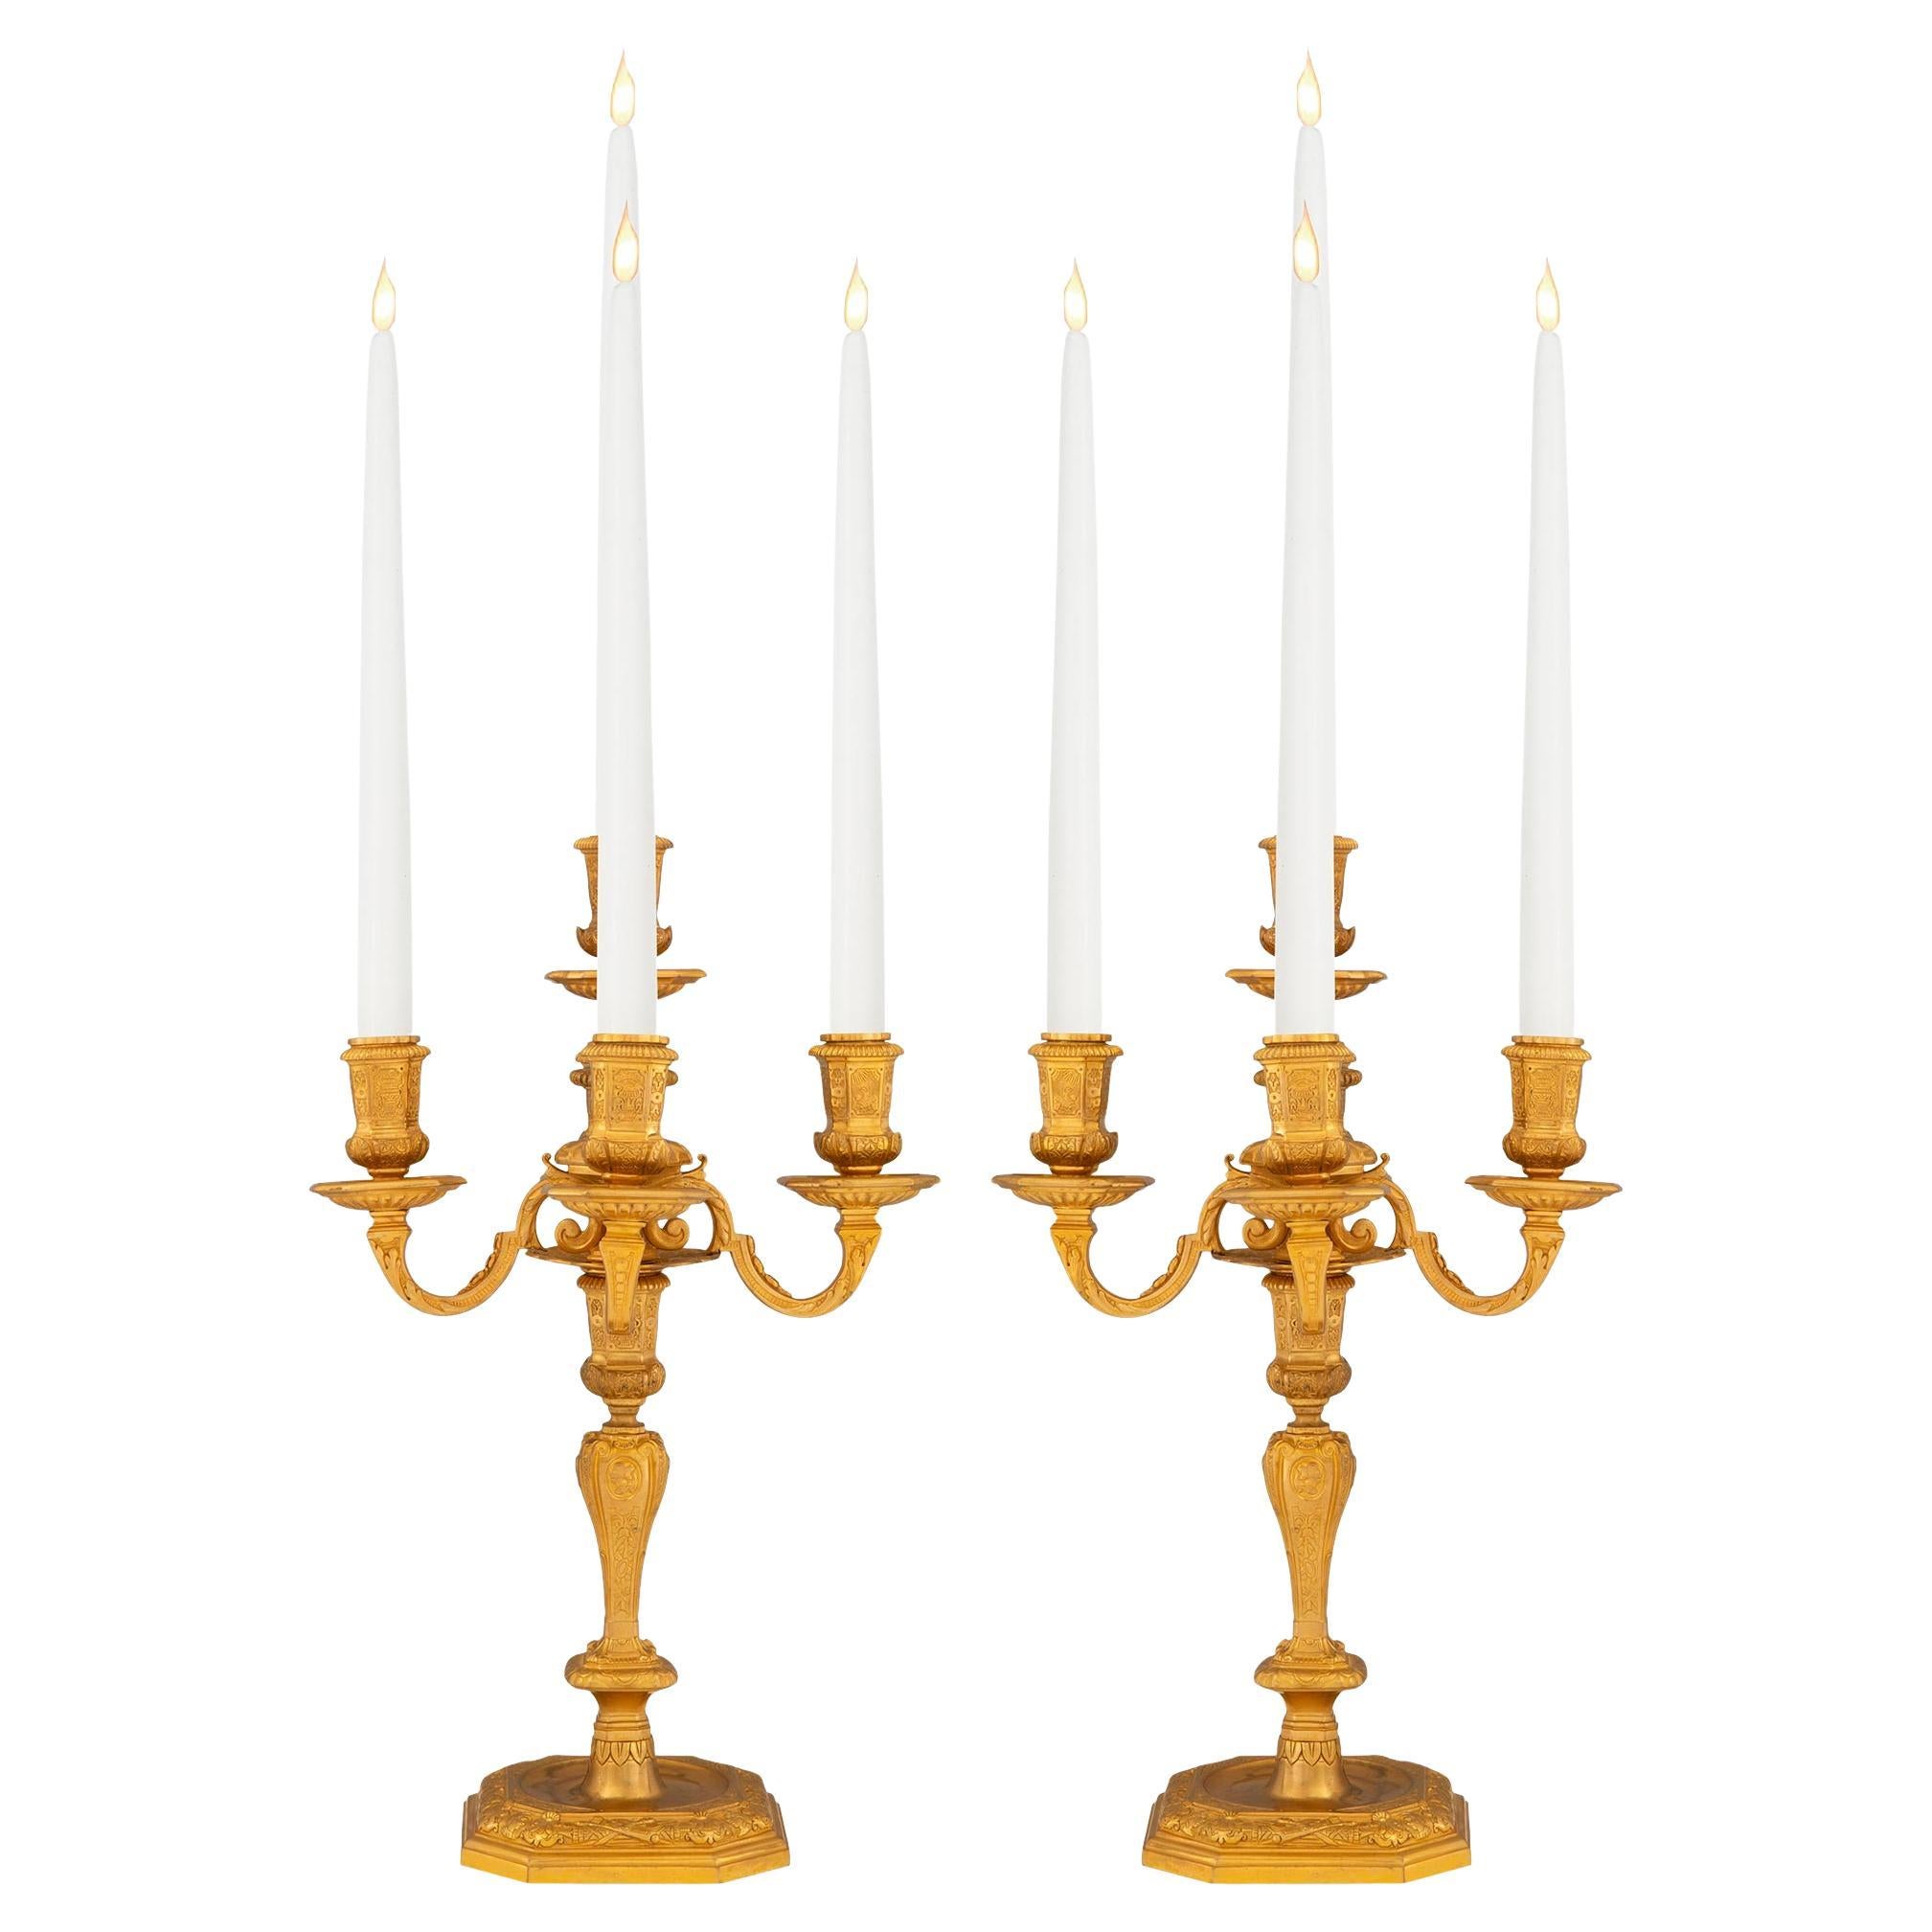 Paire de candélabres en bronze doré de style Louis XIV du 19ème siècle français